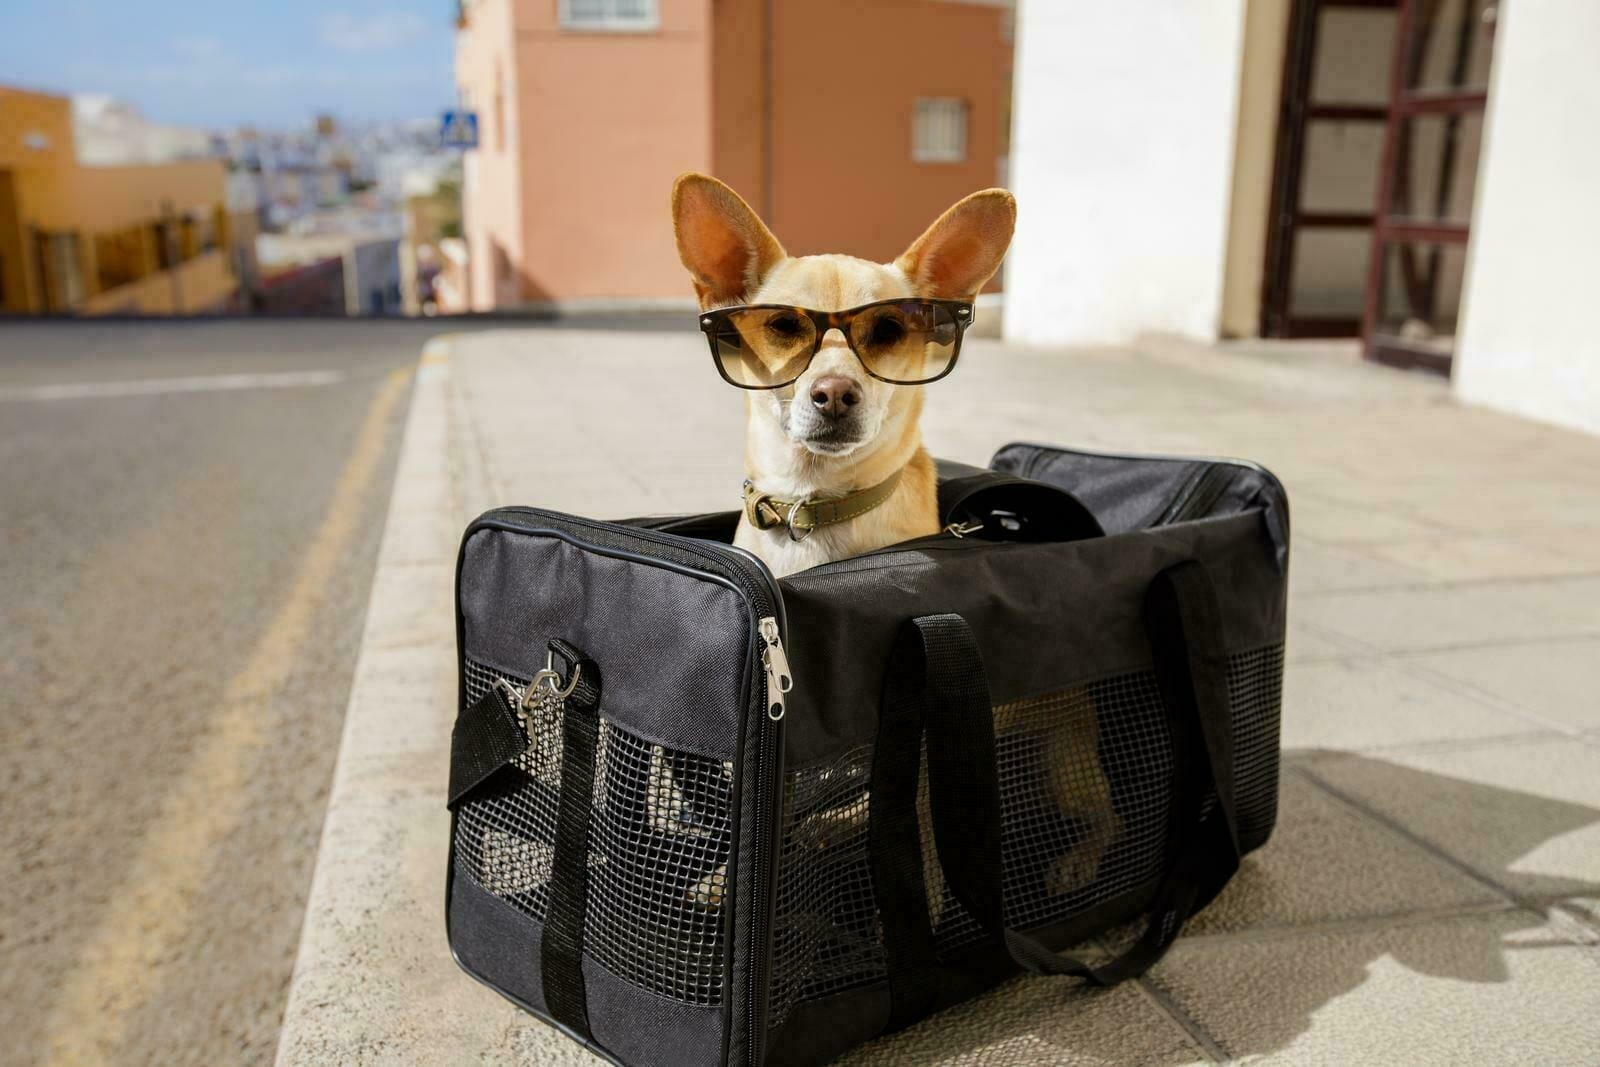 Airline Compliant Pet Carrier, Car Seat & Travel Bag